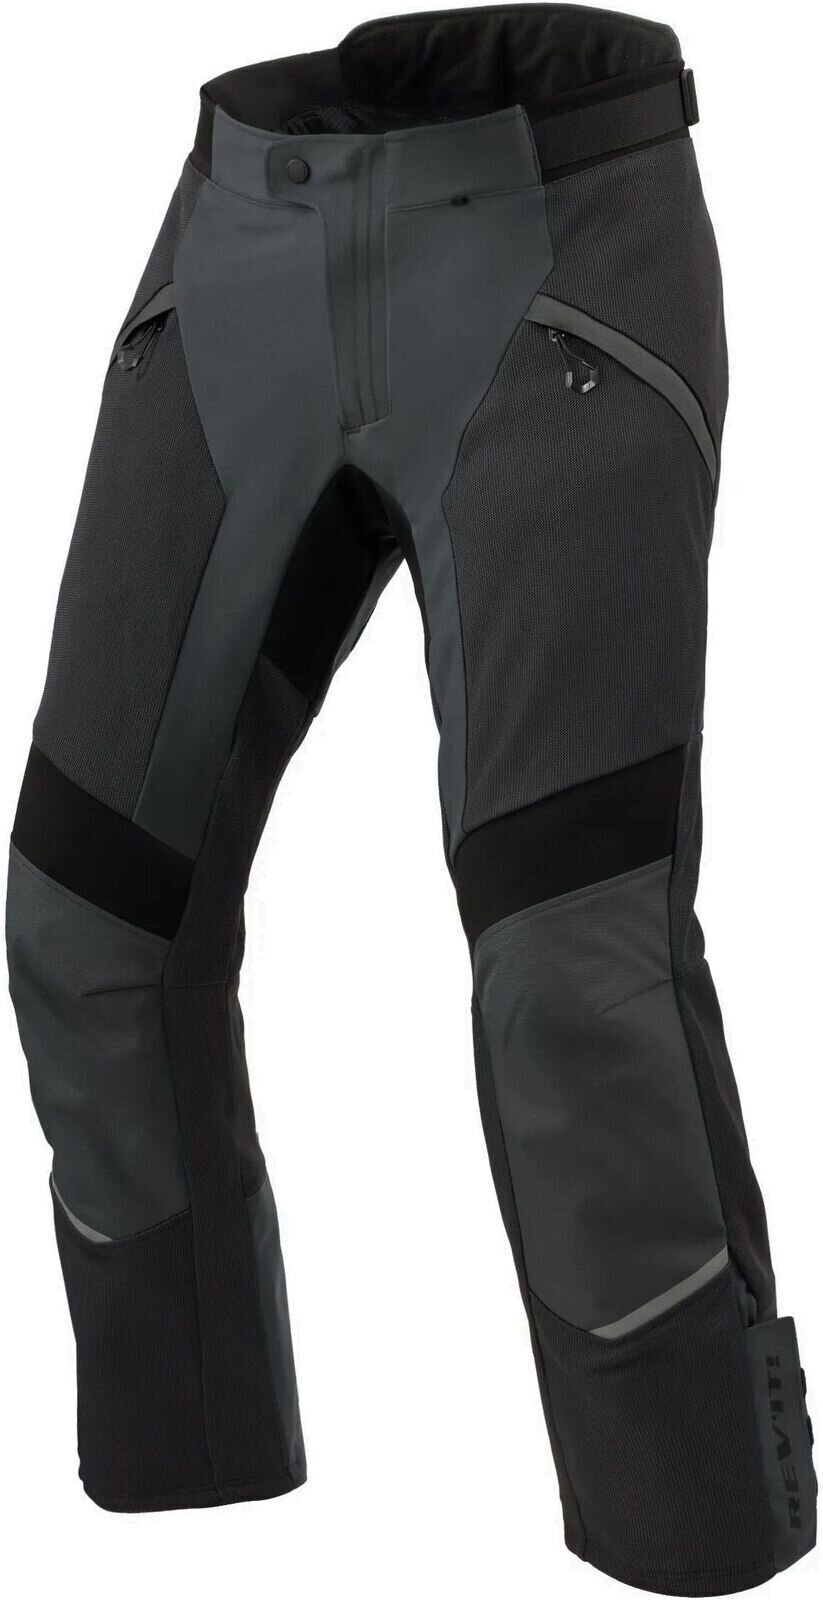 Textiel broek Rev'it! Pants Airwave 4 Anthracite XL Regular Textiel broek